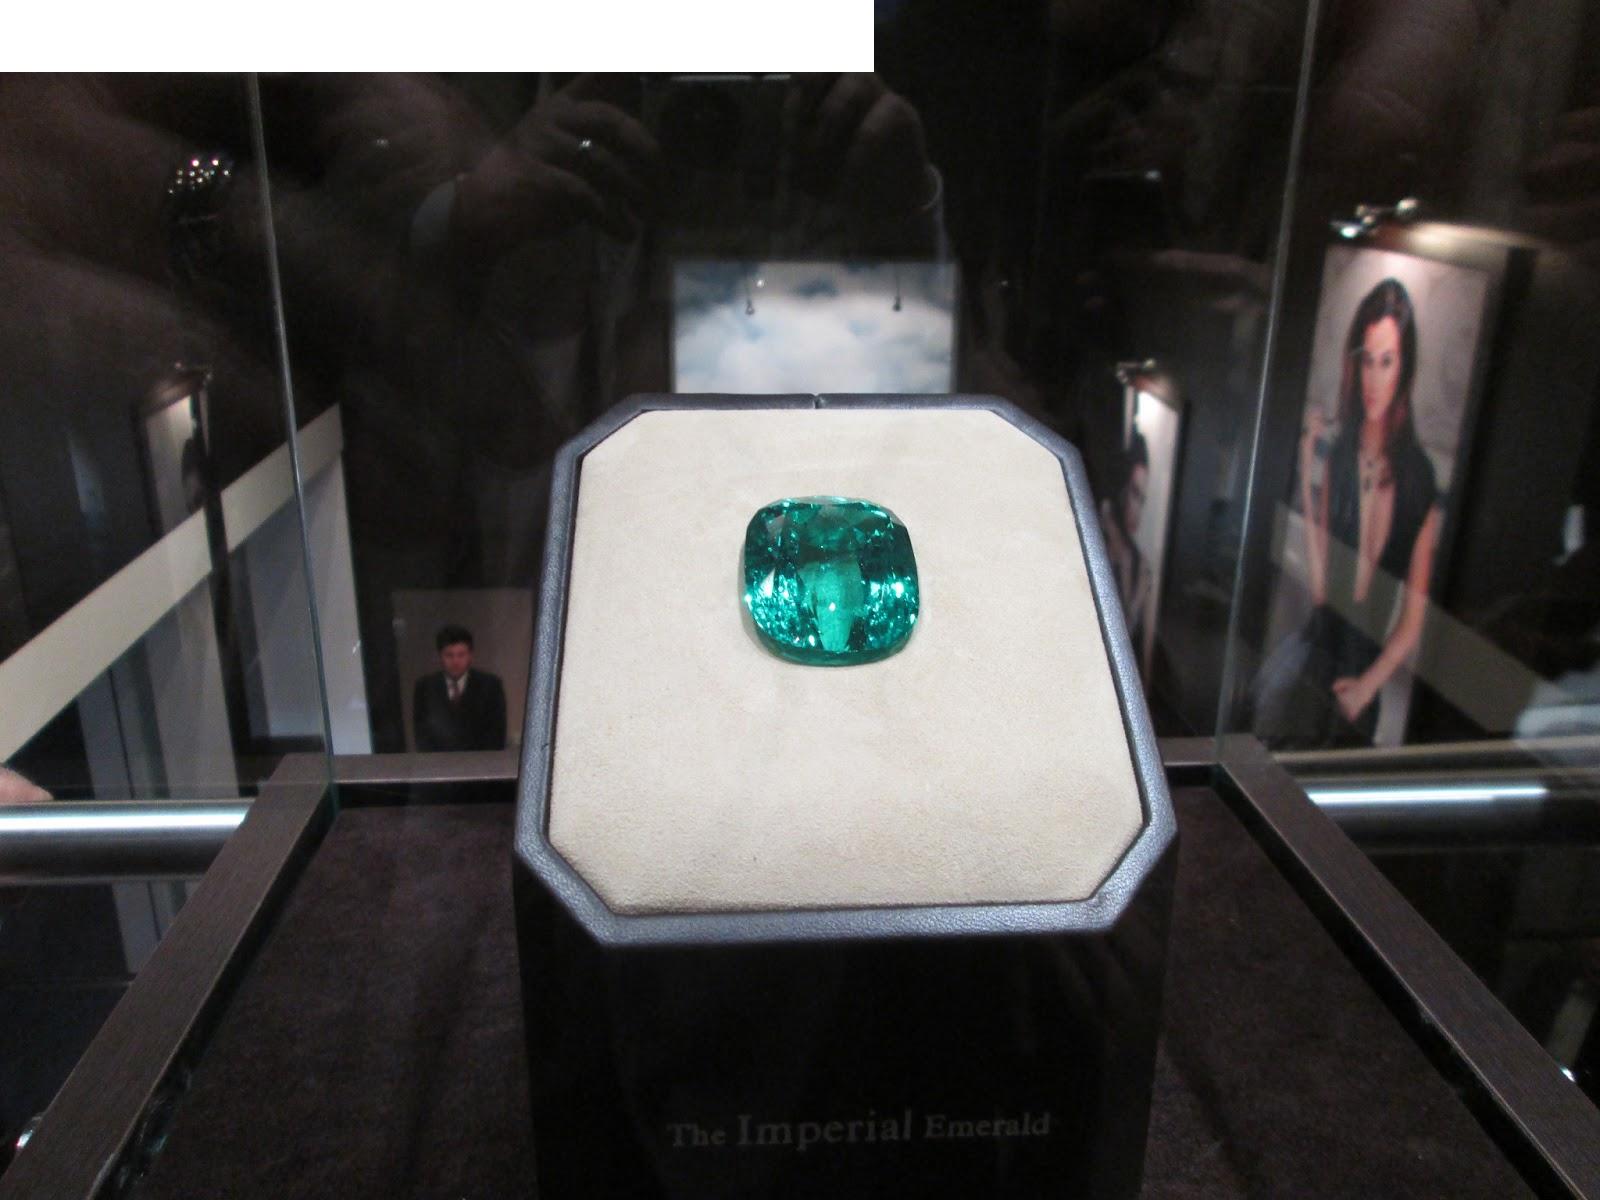 "Imperial Emerald" i 206 karat